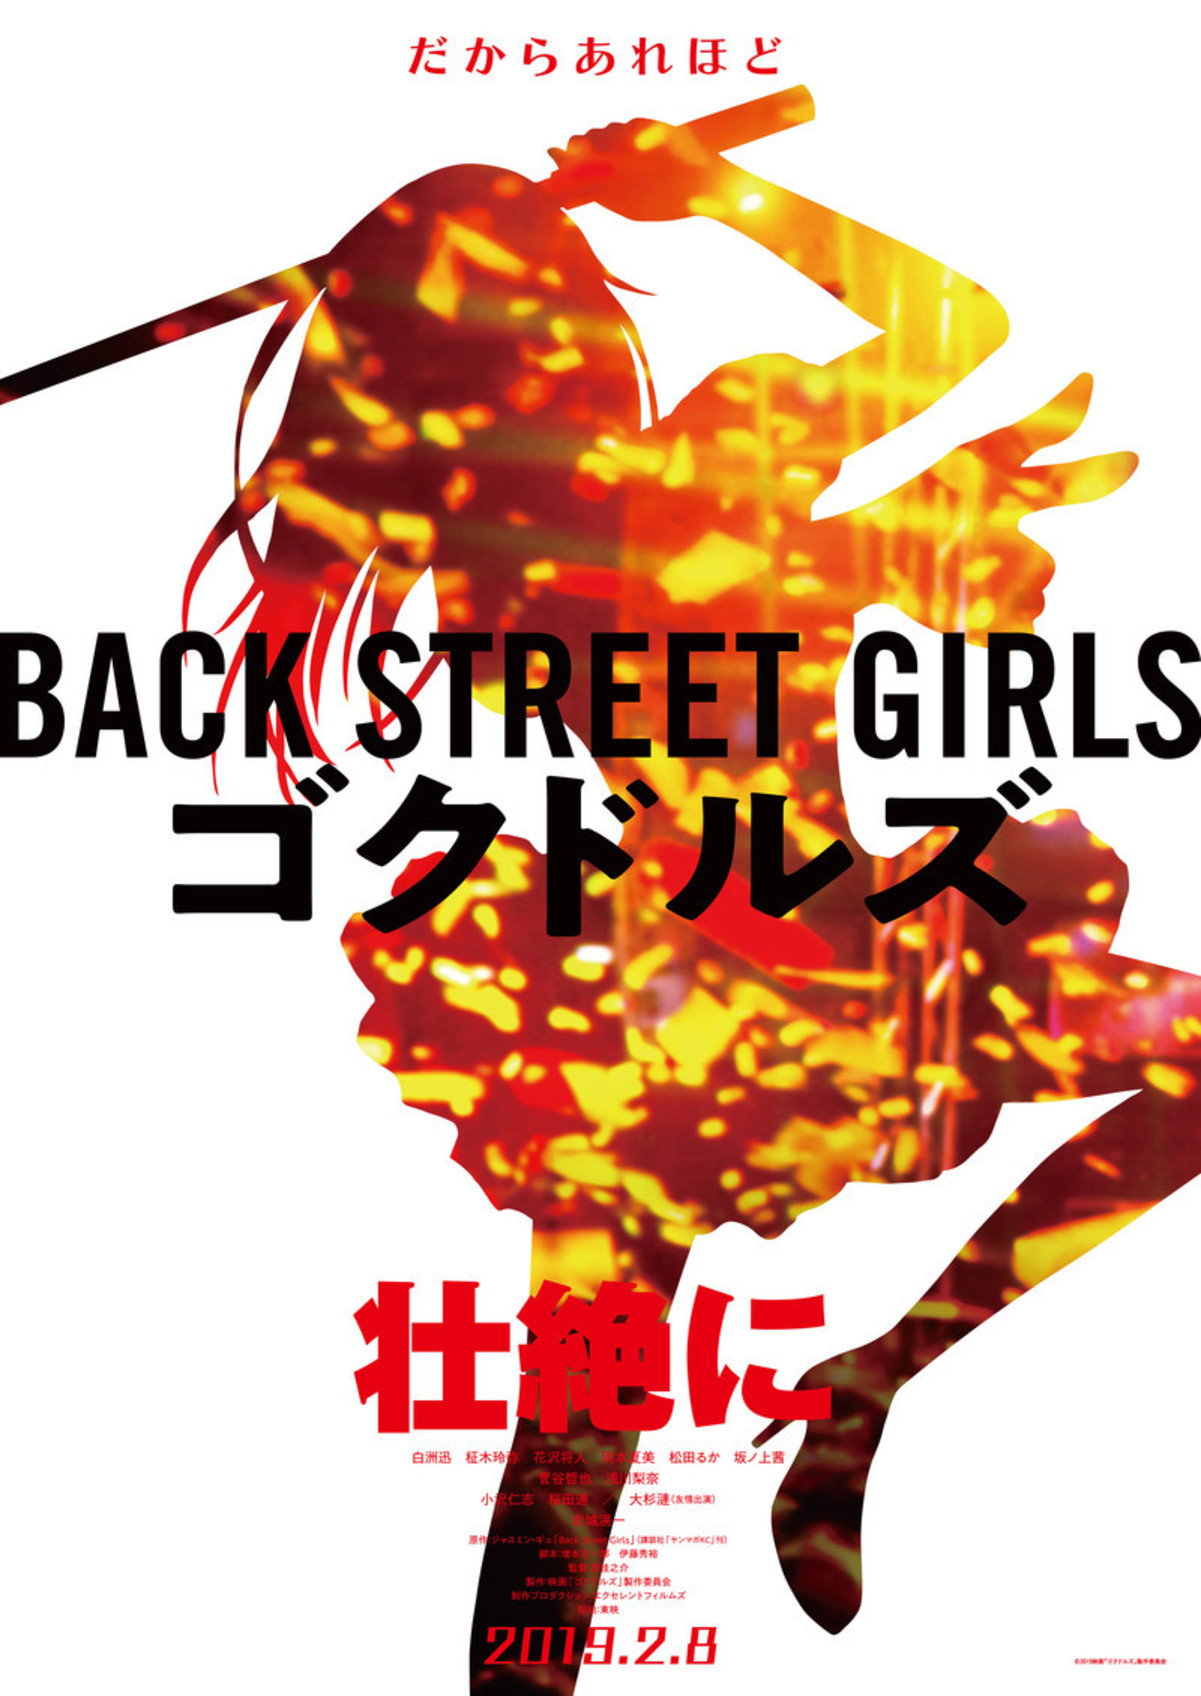 東映ピンキーバイオレンス復活 Back Street Girls 実写映画化 映画ニュース 映画 Com